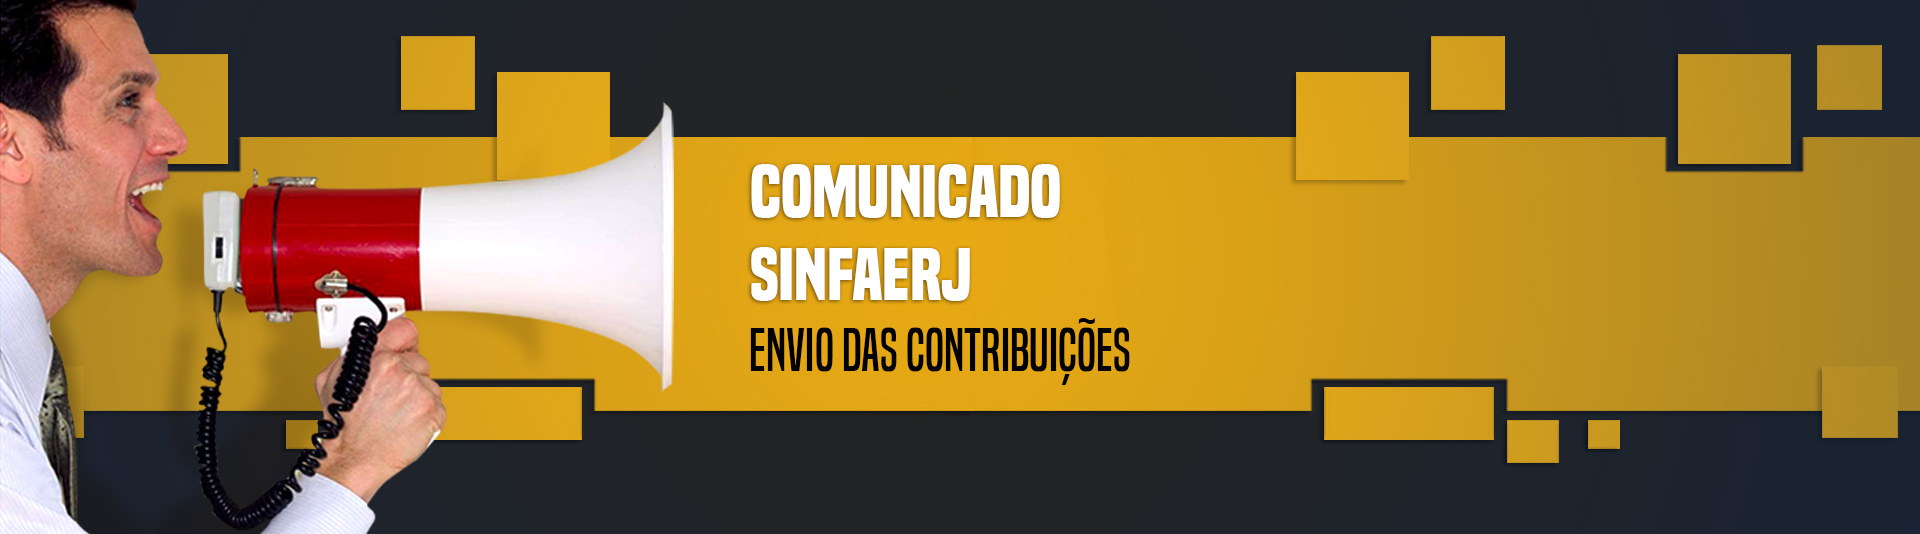 slider_comunicado_sinfaerj